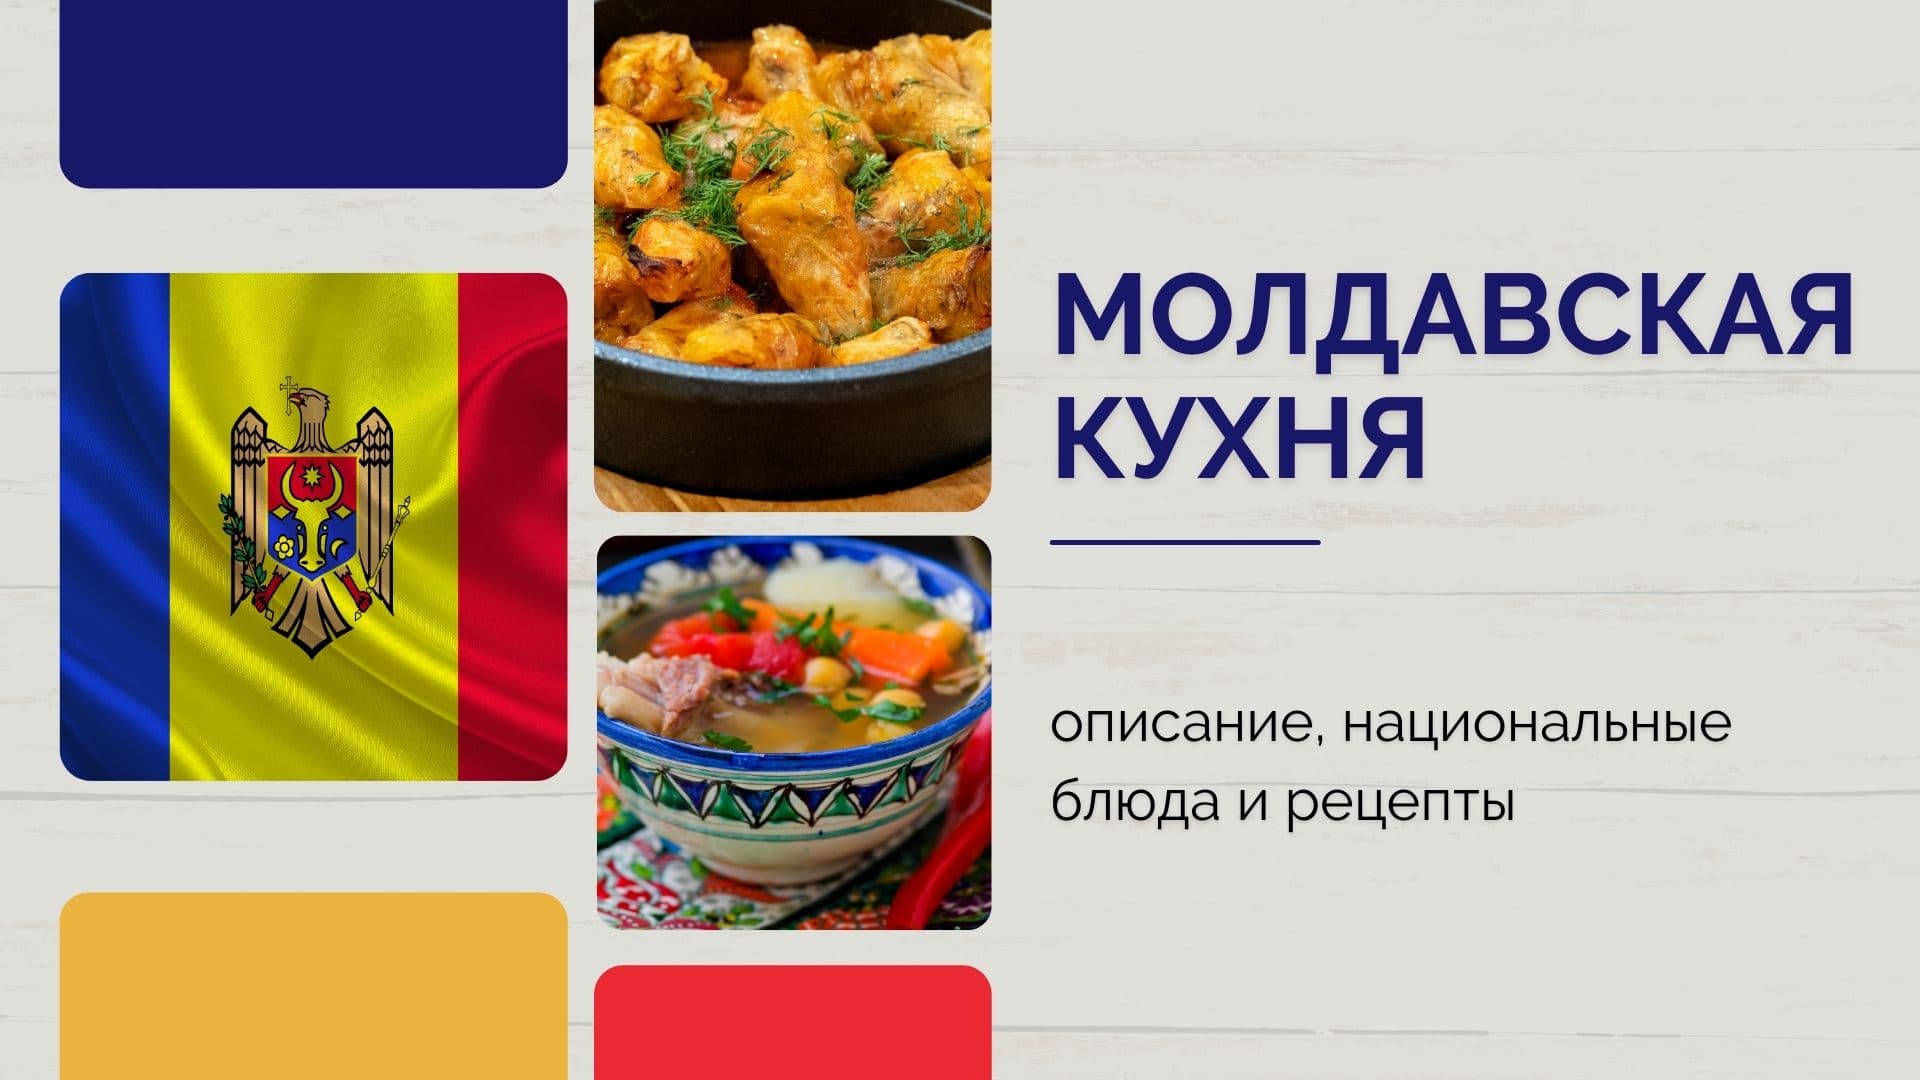 Описание традиционных продуктов и еды Молдавии, а также полезные и опасные свойства молдавской кухни и красочные фотографии блюд